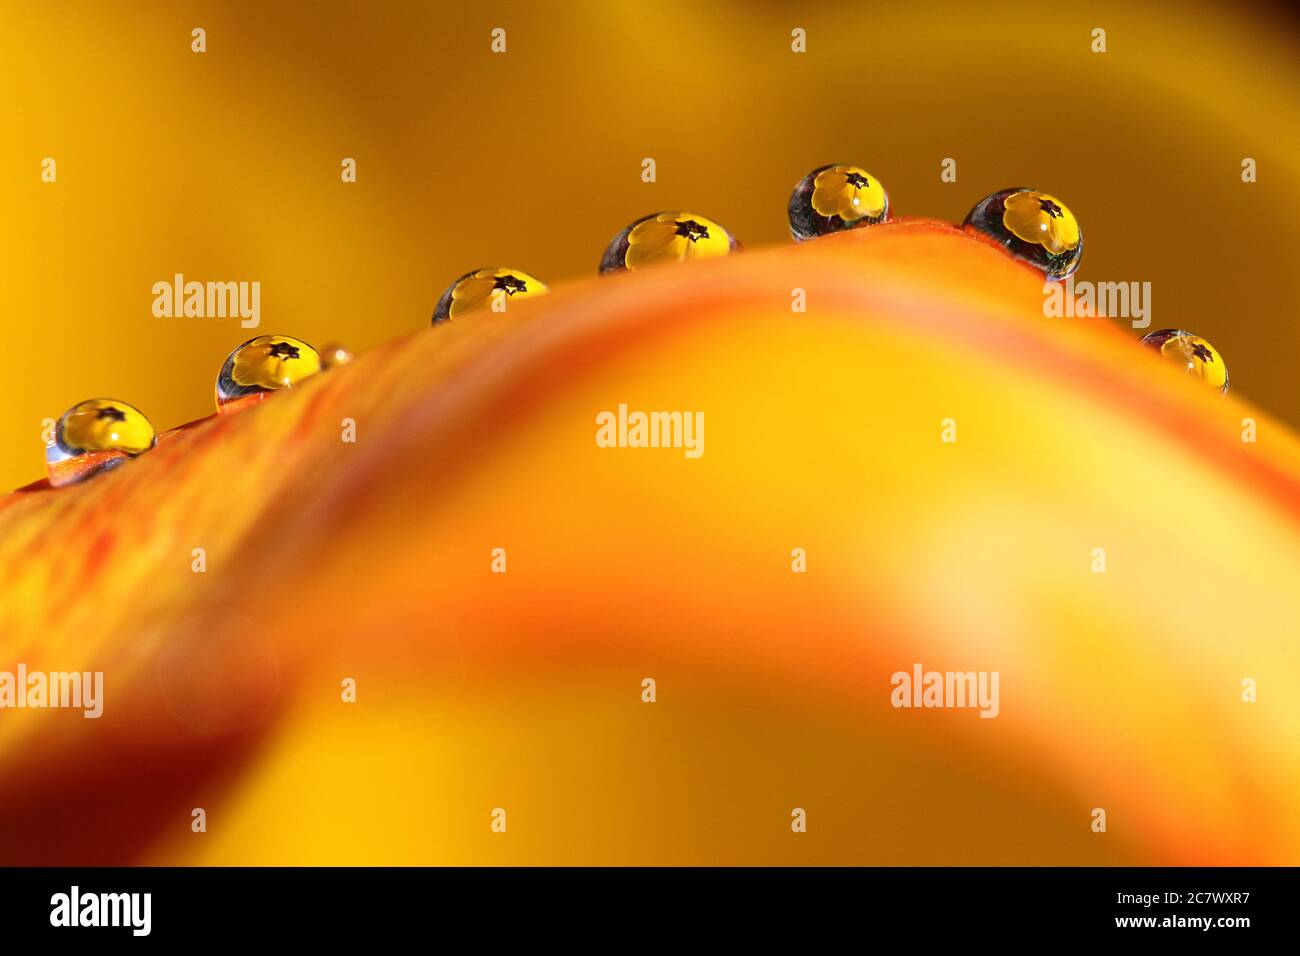 Gotas de agua sentadas en un pétalo de tulipa naranja y amarillo con el centro del tulipa refractado en las gotitas. Una obra de arte abstracta. Foto de stock